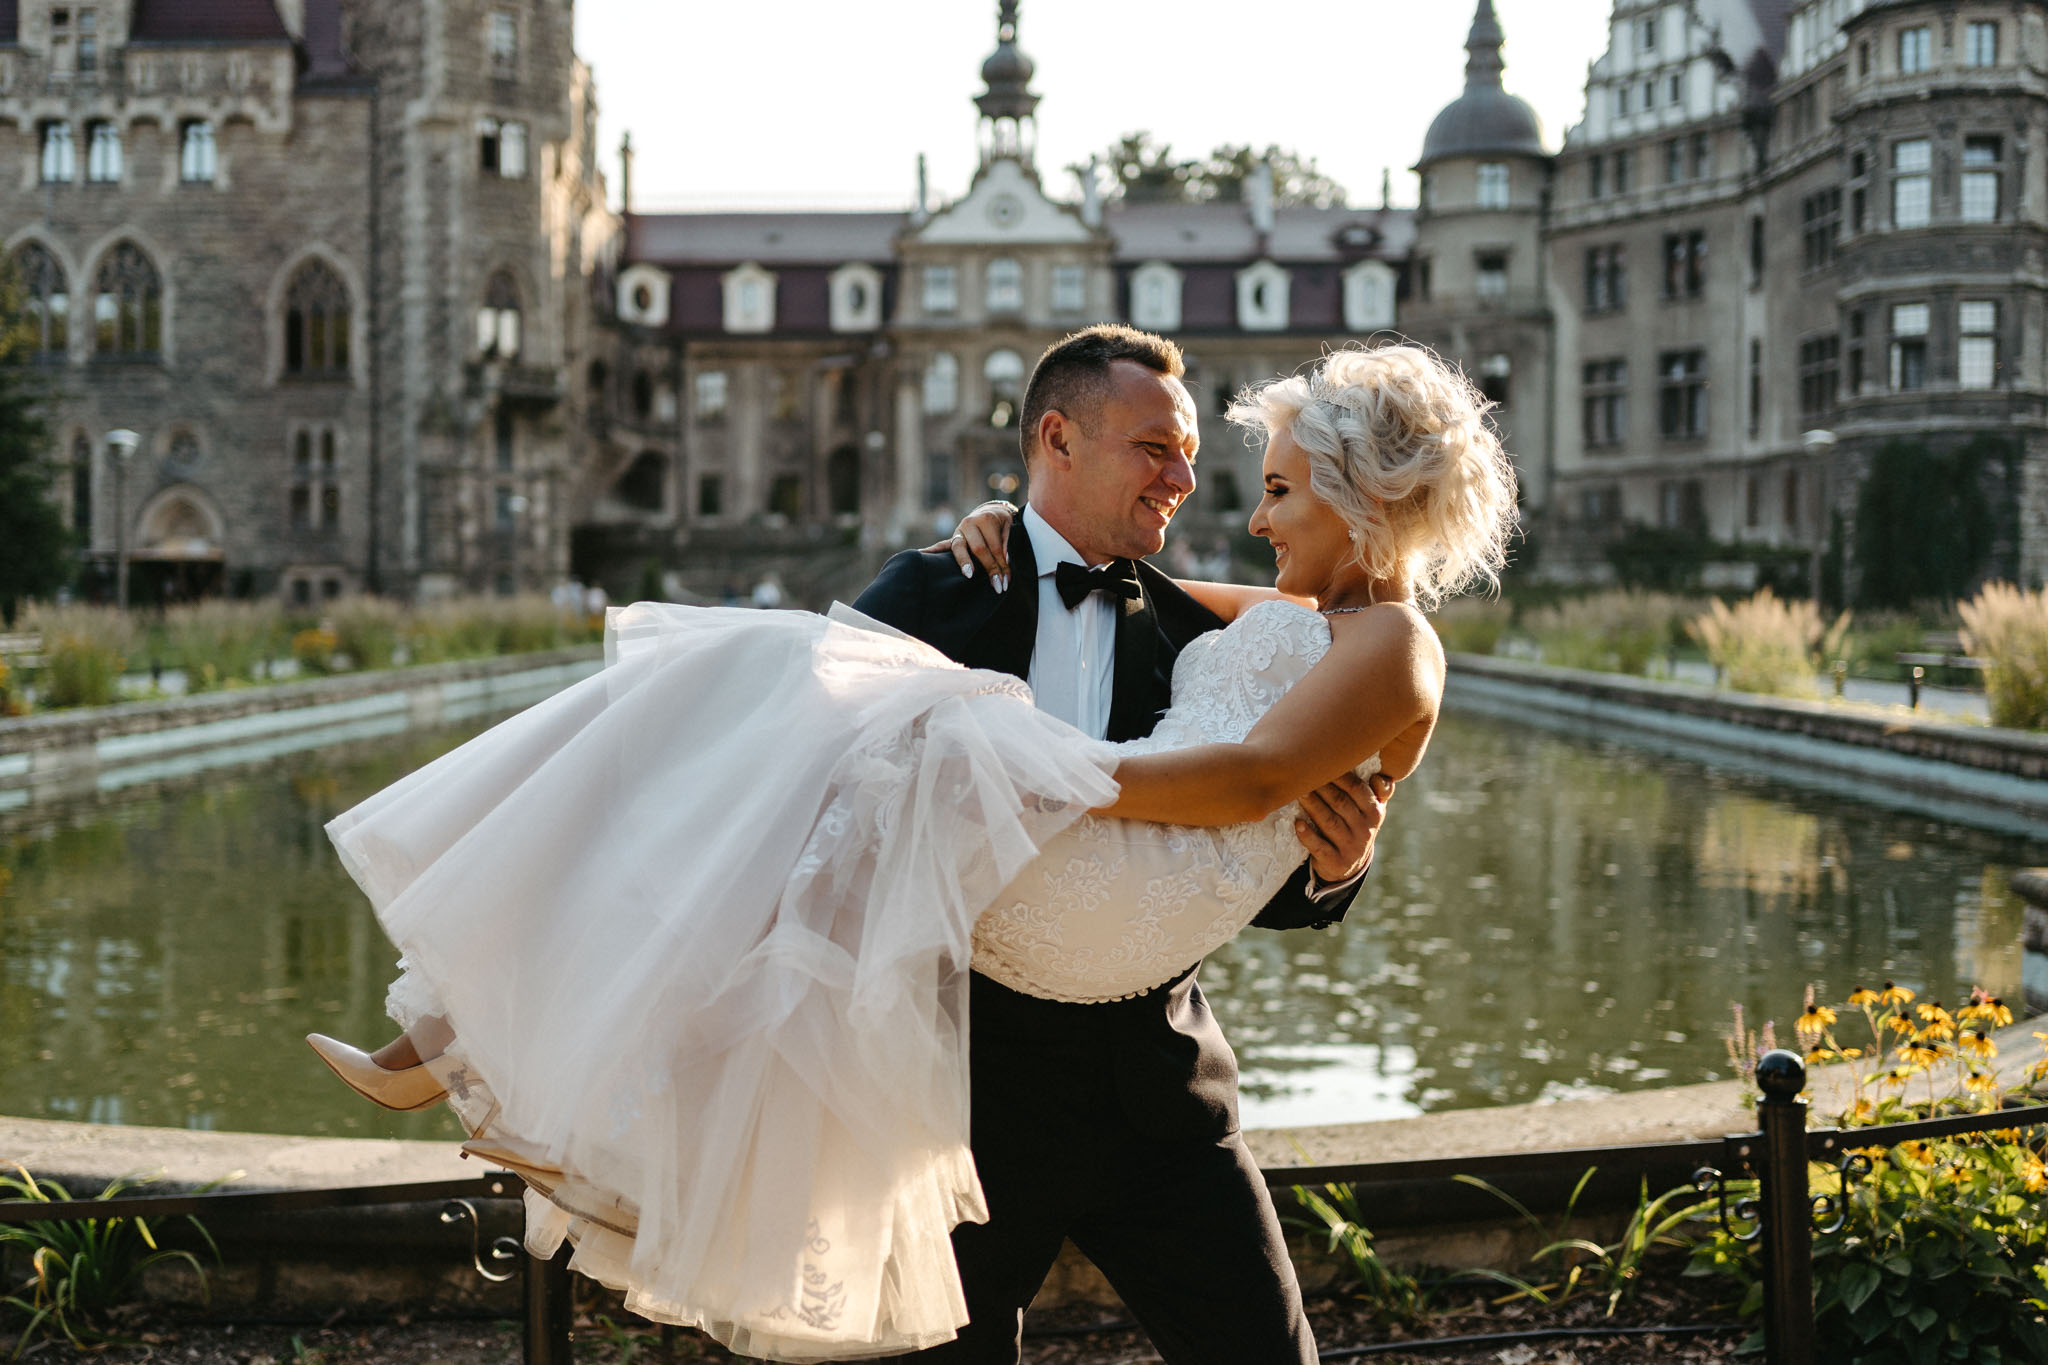 Sesja ślubna w Mosznej | Plener ślubny w Mosznej | Zdjęcia ślubne w Mosznej